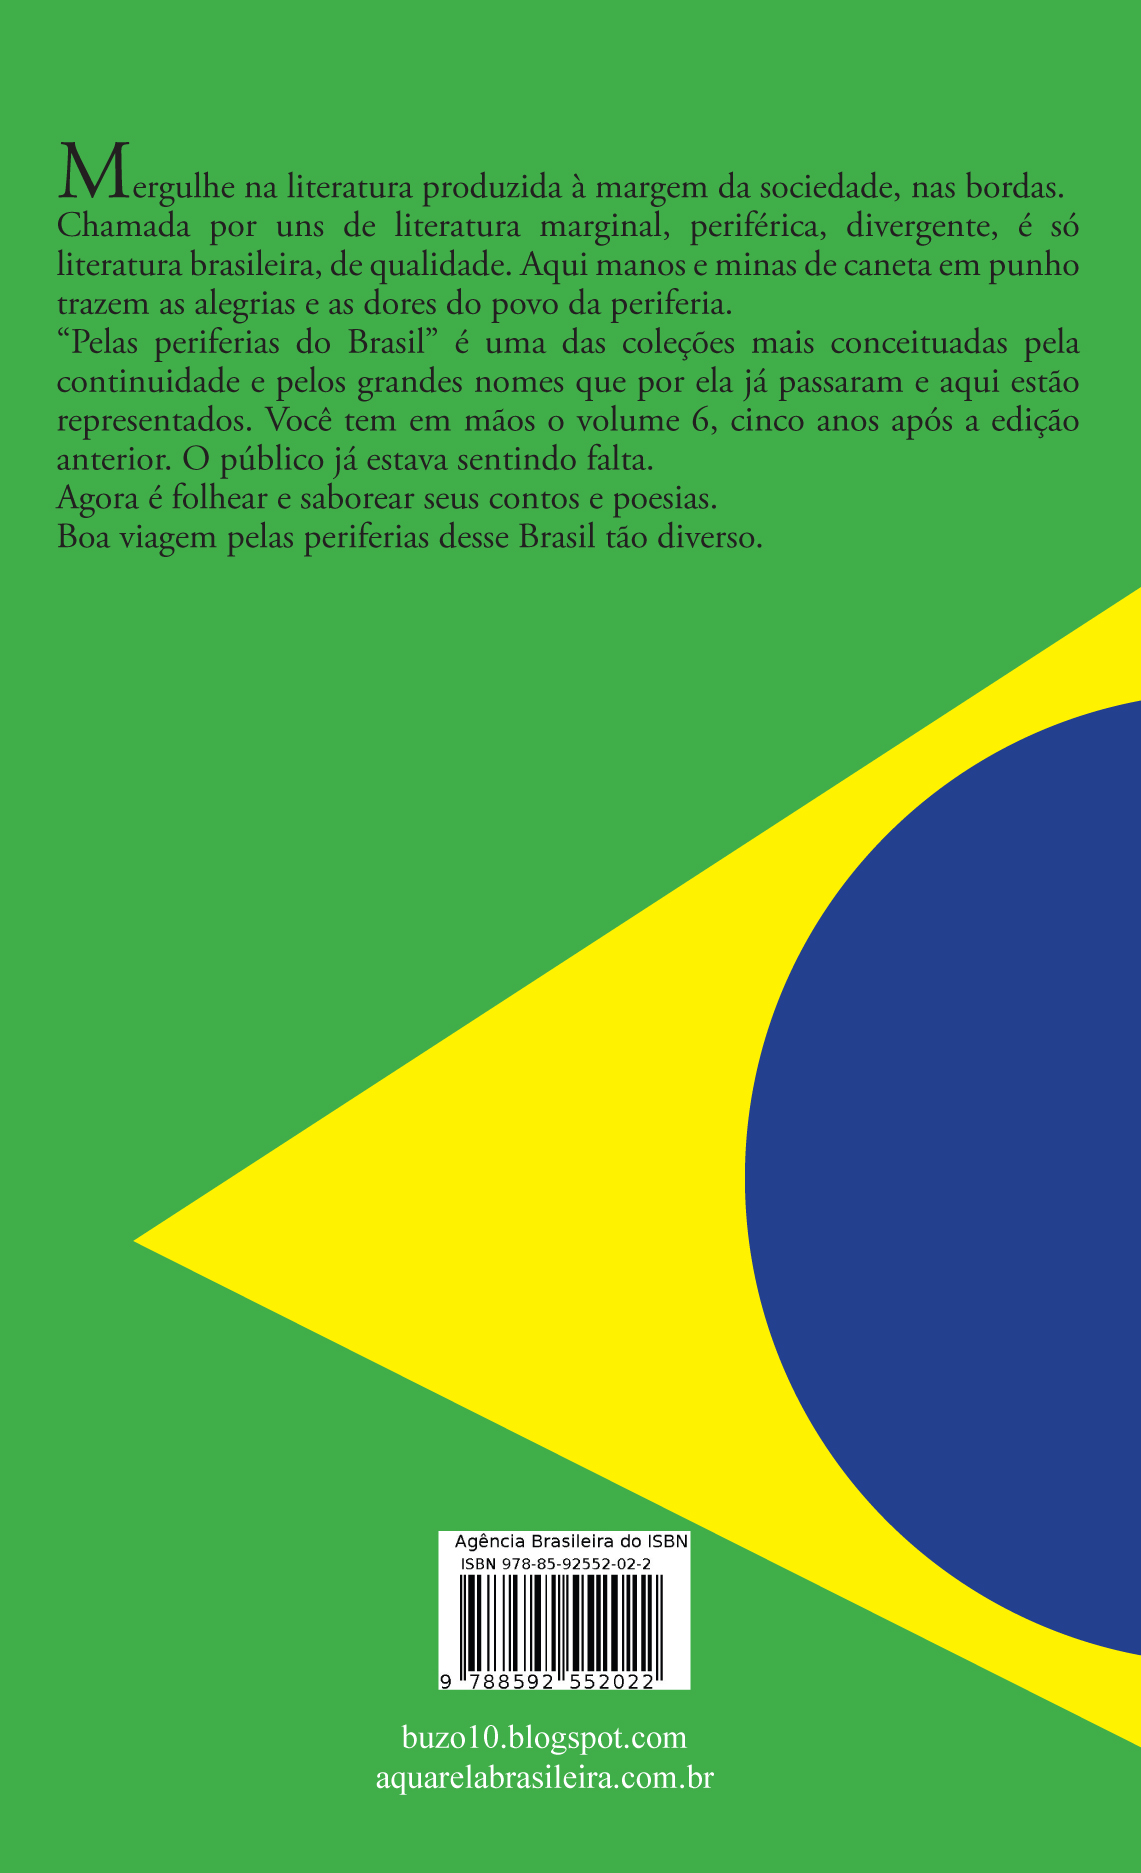 pelas-periferias-do-brasil-vol-6_quarta_capa-promo